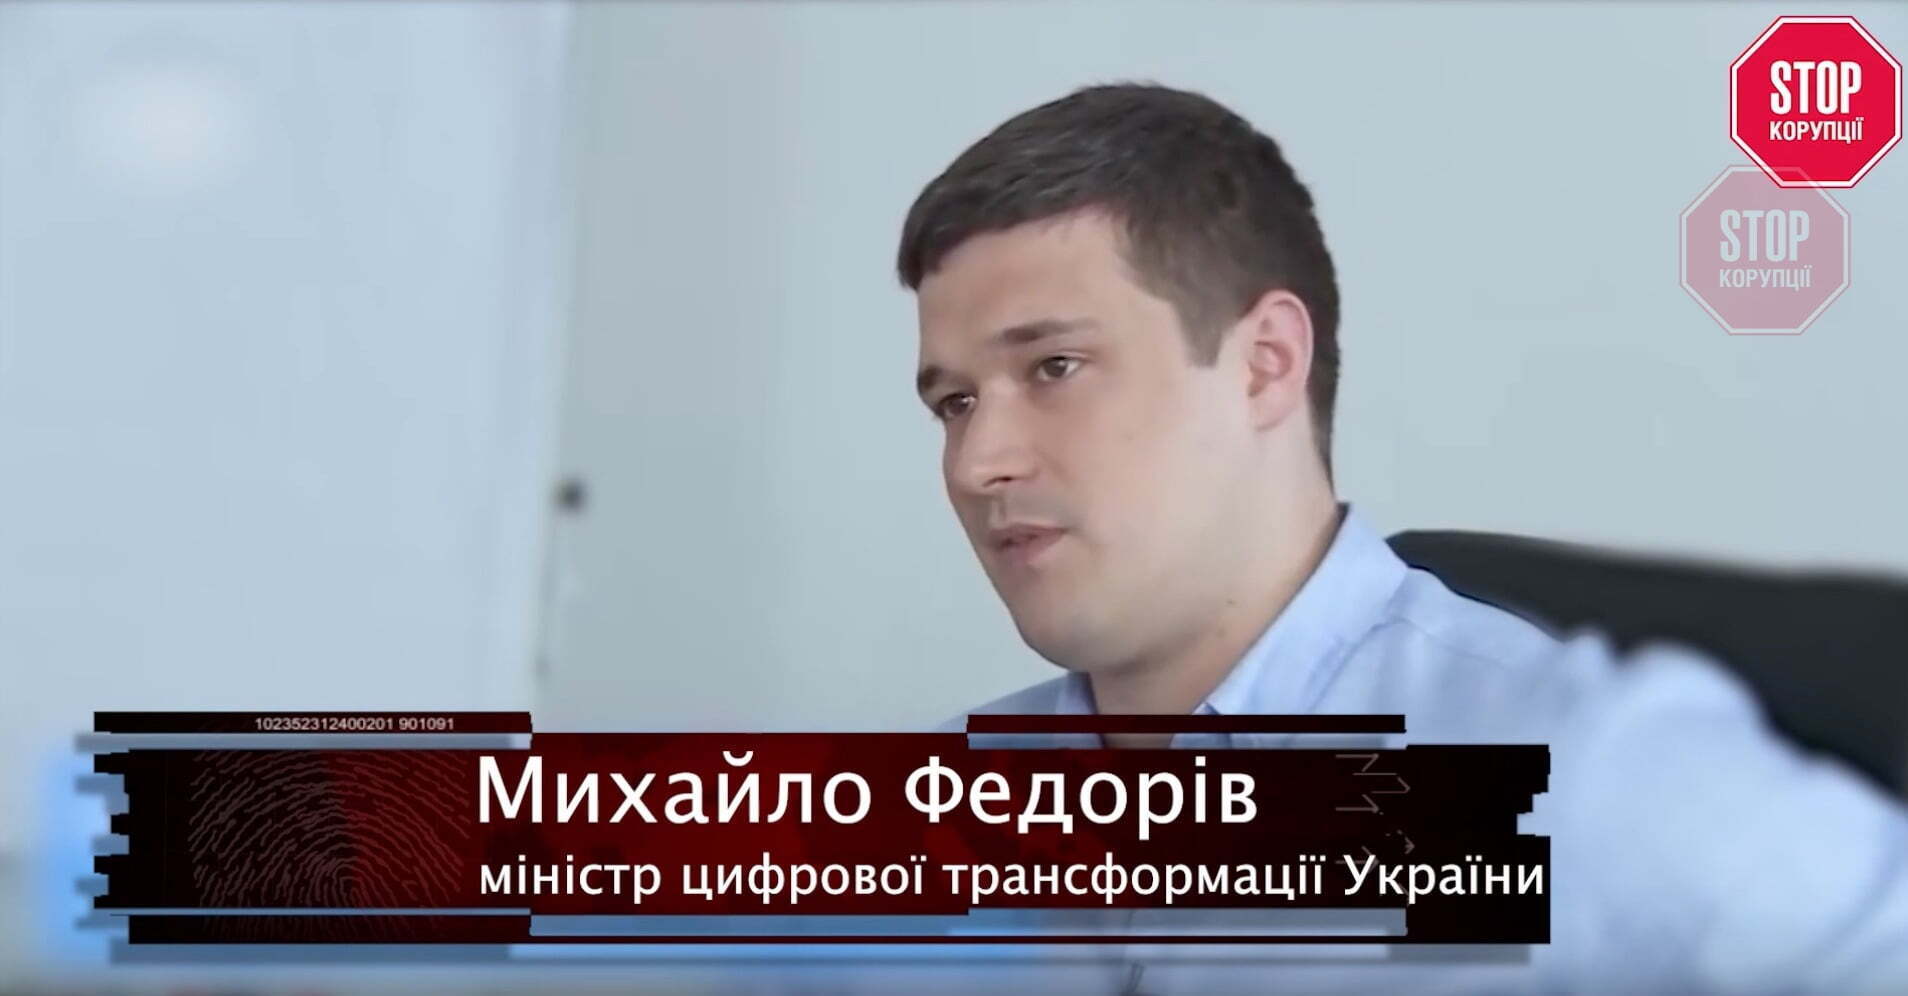 Михайло Федорів ще пів року тому оголосив питання цифрової ідентифікації одним з пріоритетних напрямів